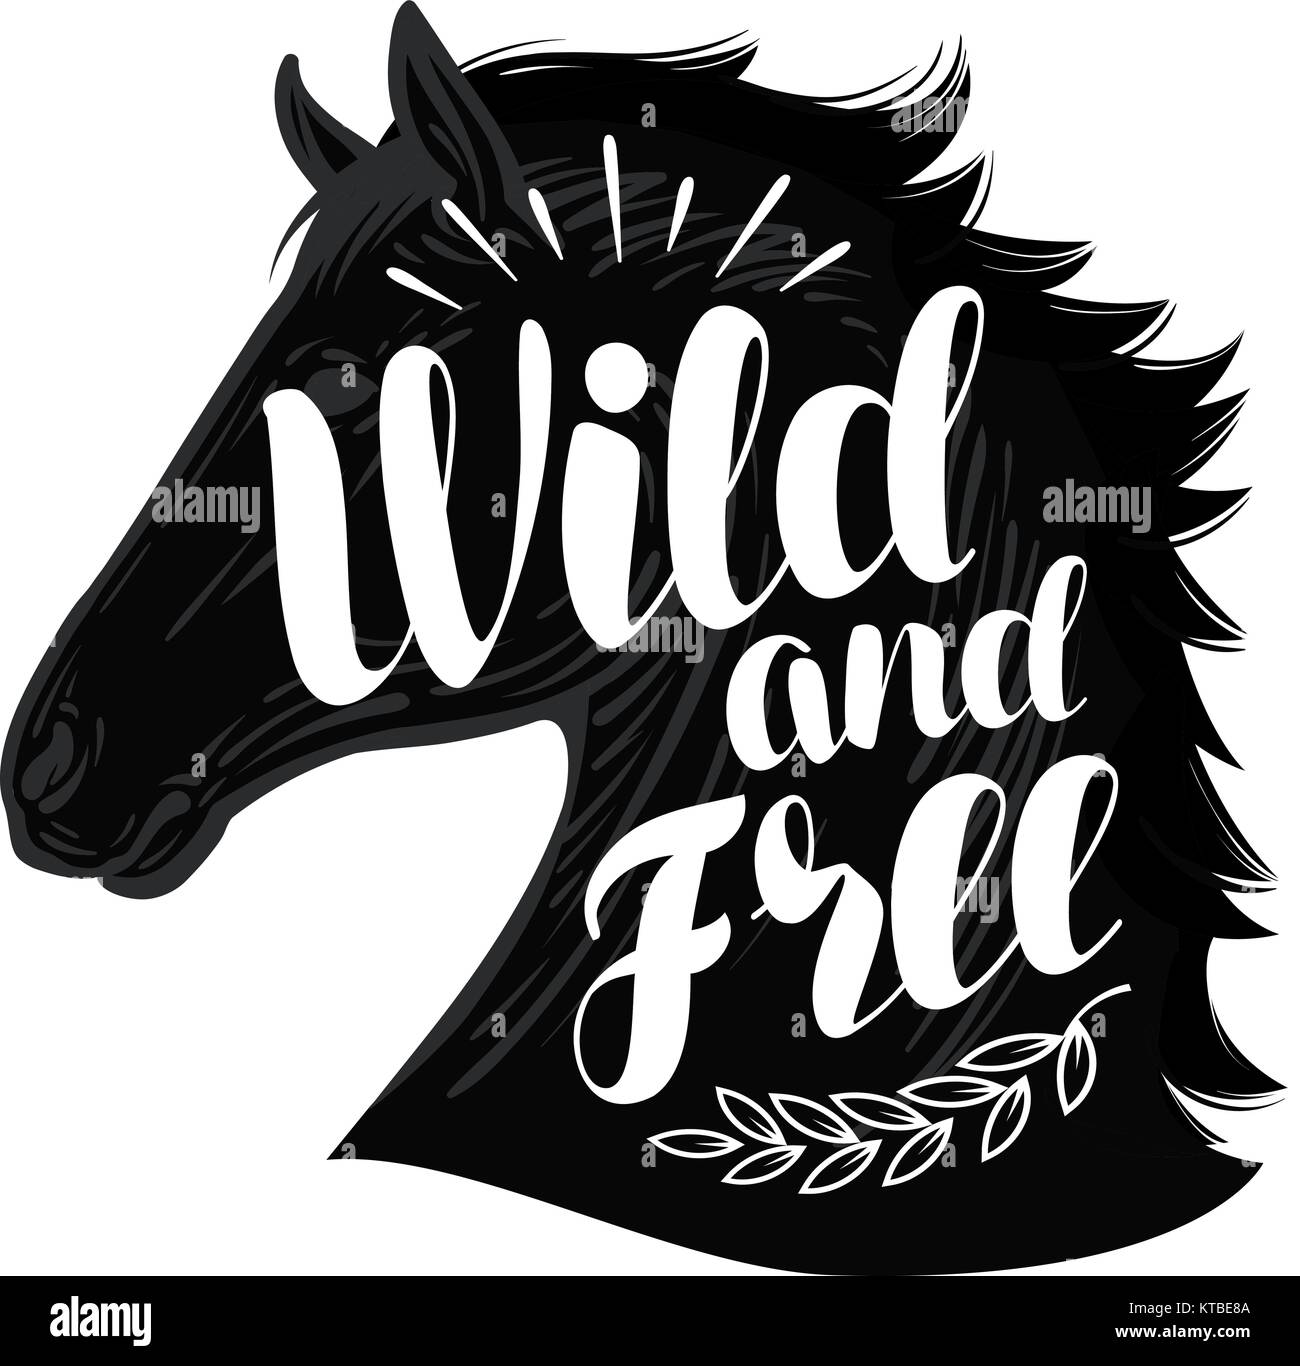 Pferd. Wild und frei, Schriftzug. Typografische Gestaltung Vector Illustration Stock Vektor